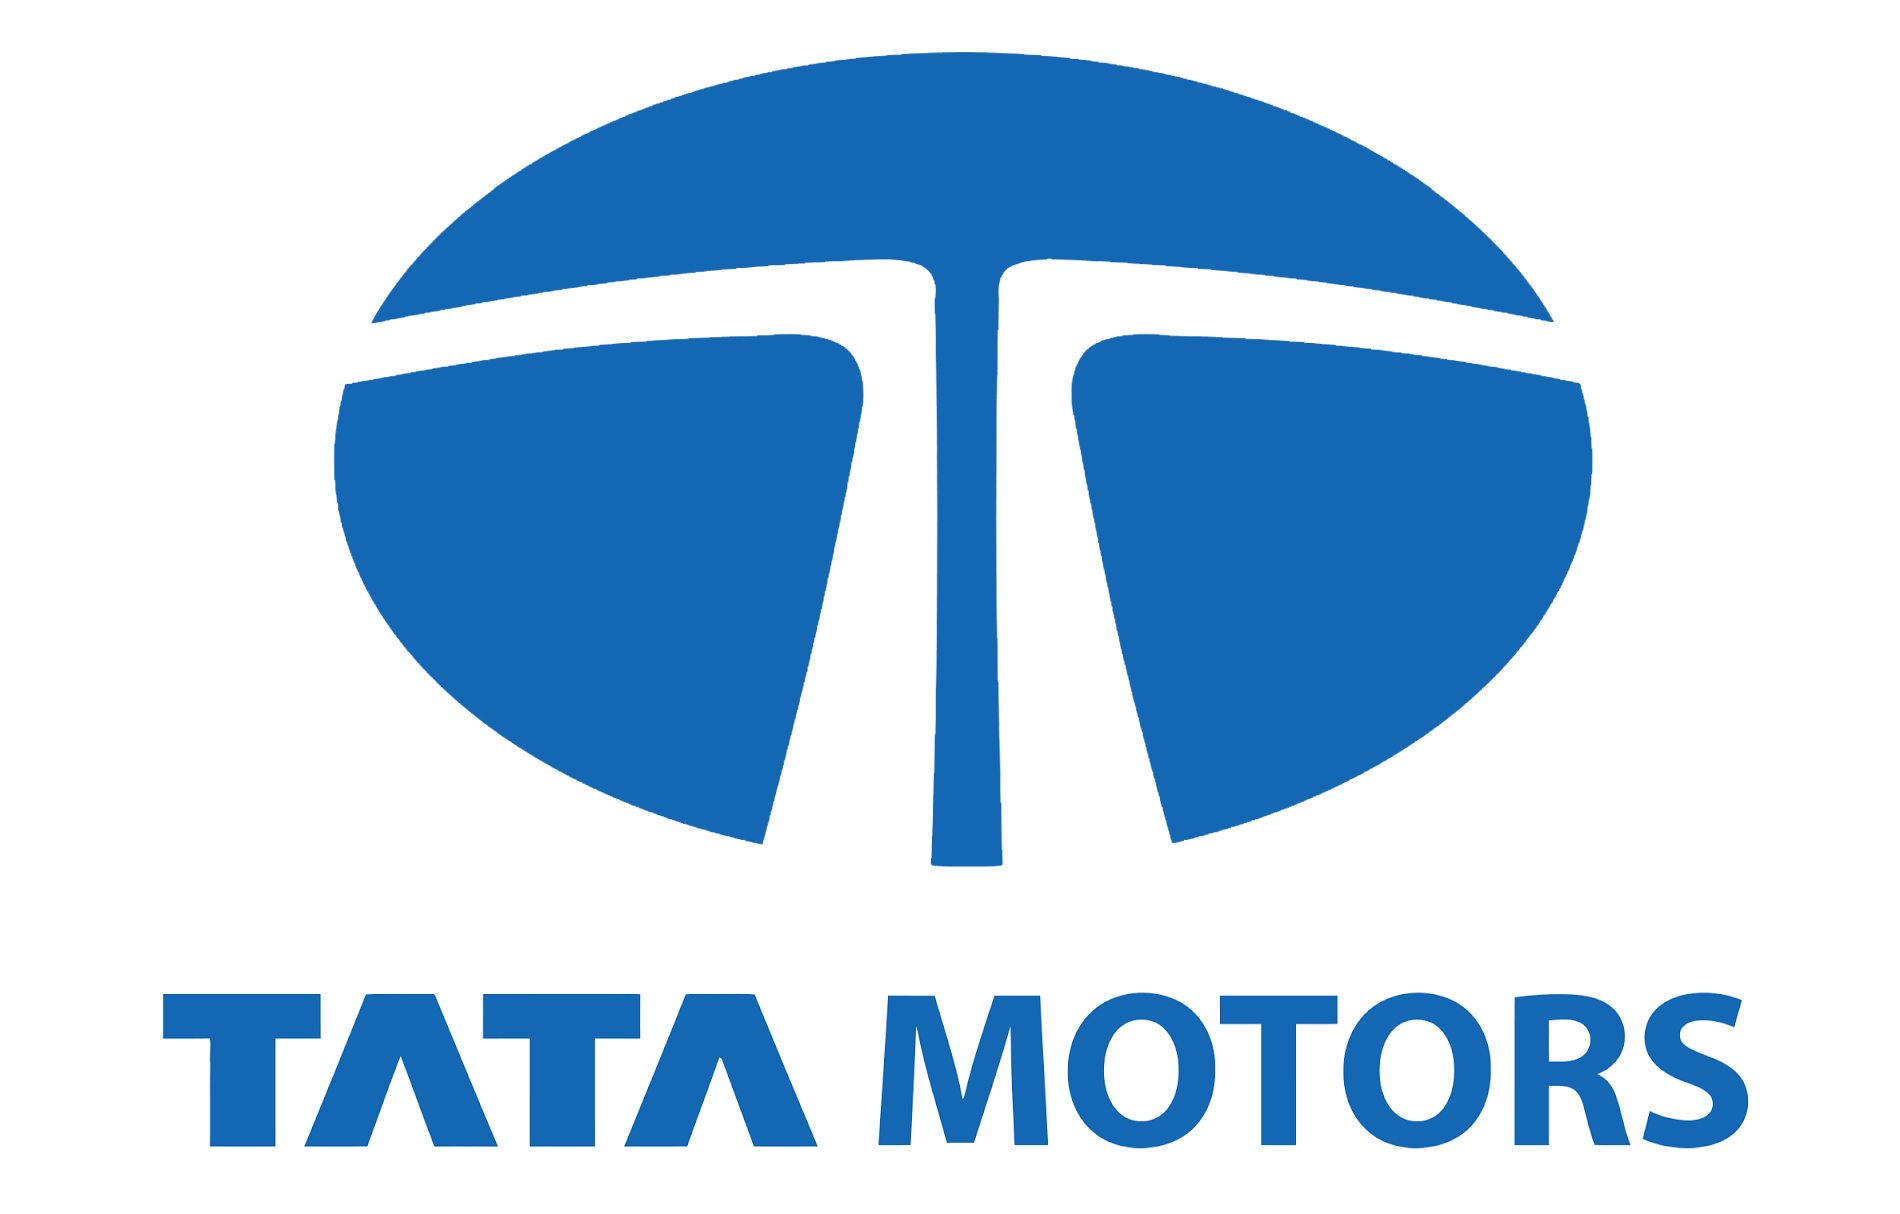 Tata Motors Cars Showroom - Ideal Dealer PV Logo